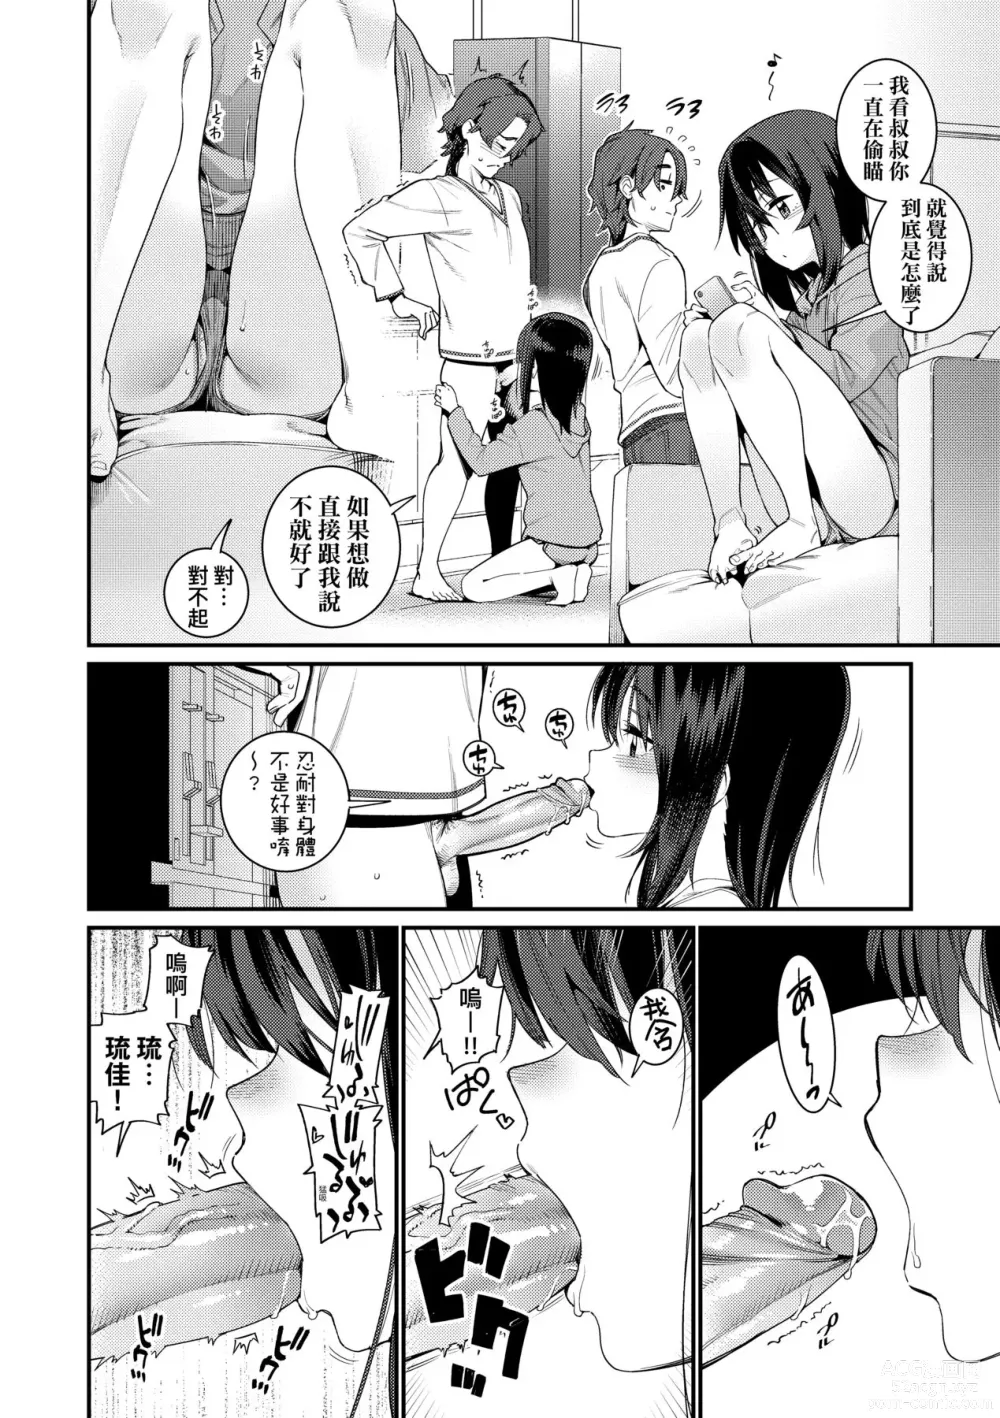 Page 197 of manga Itoshiki Wagaya (decensored)